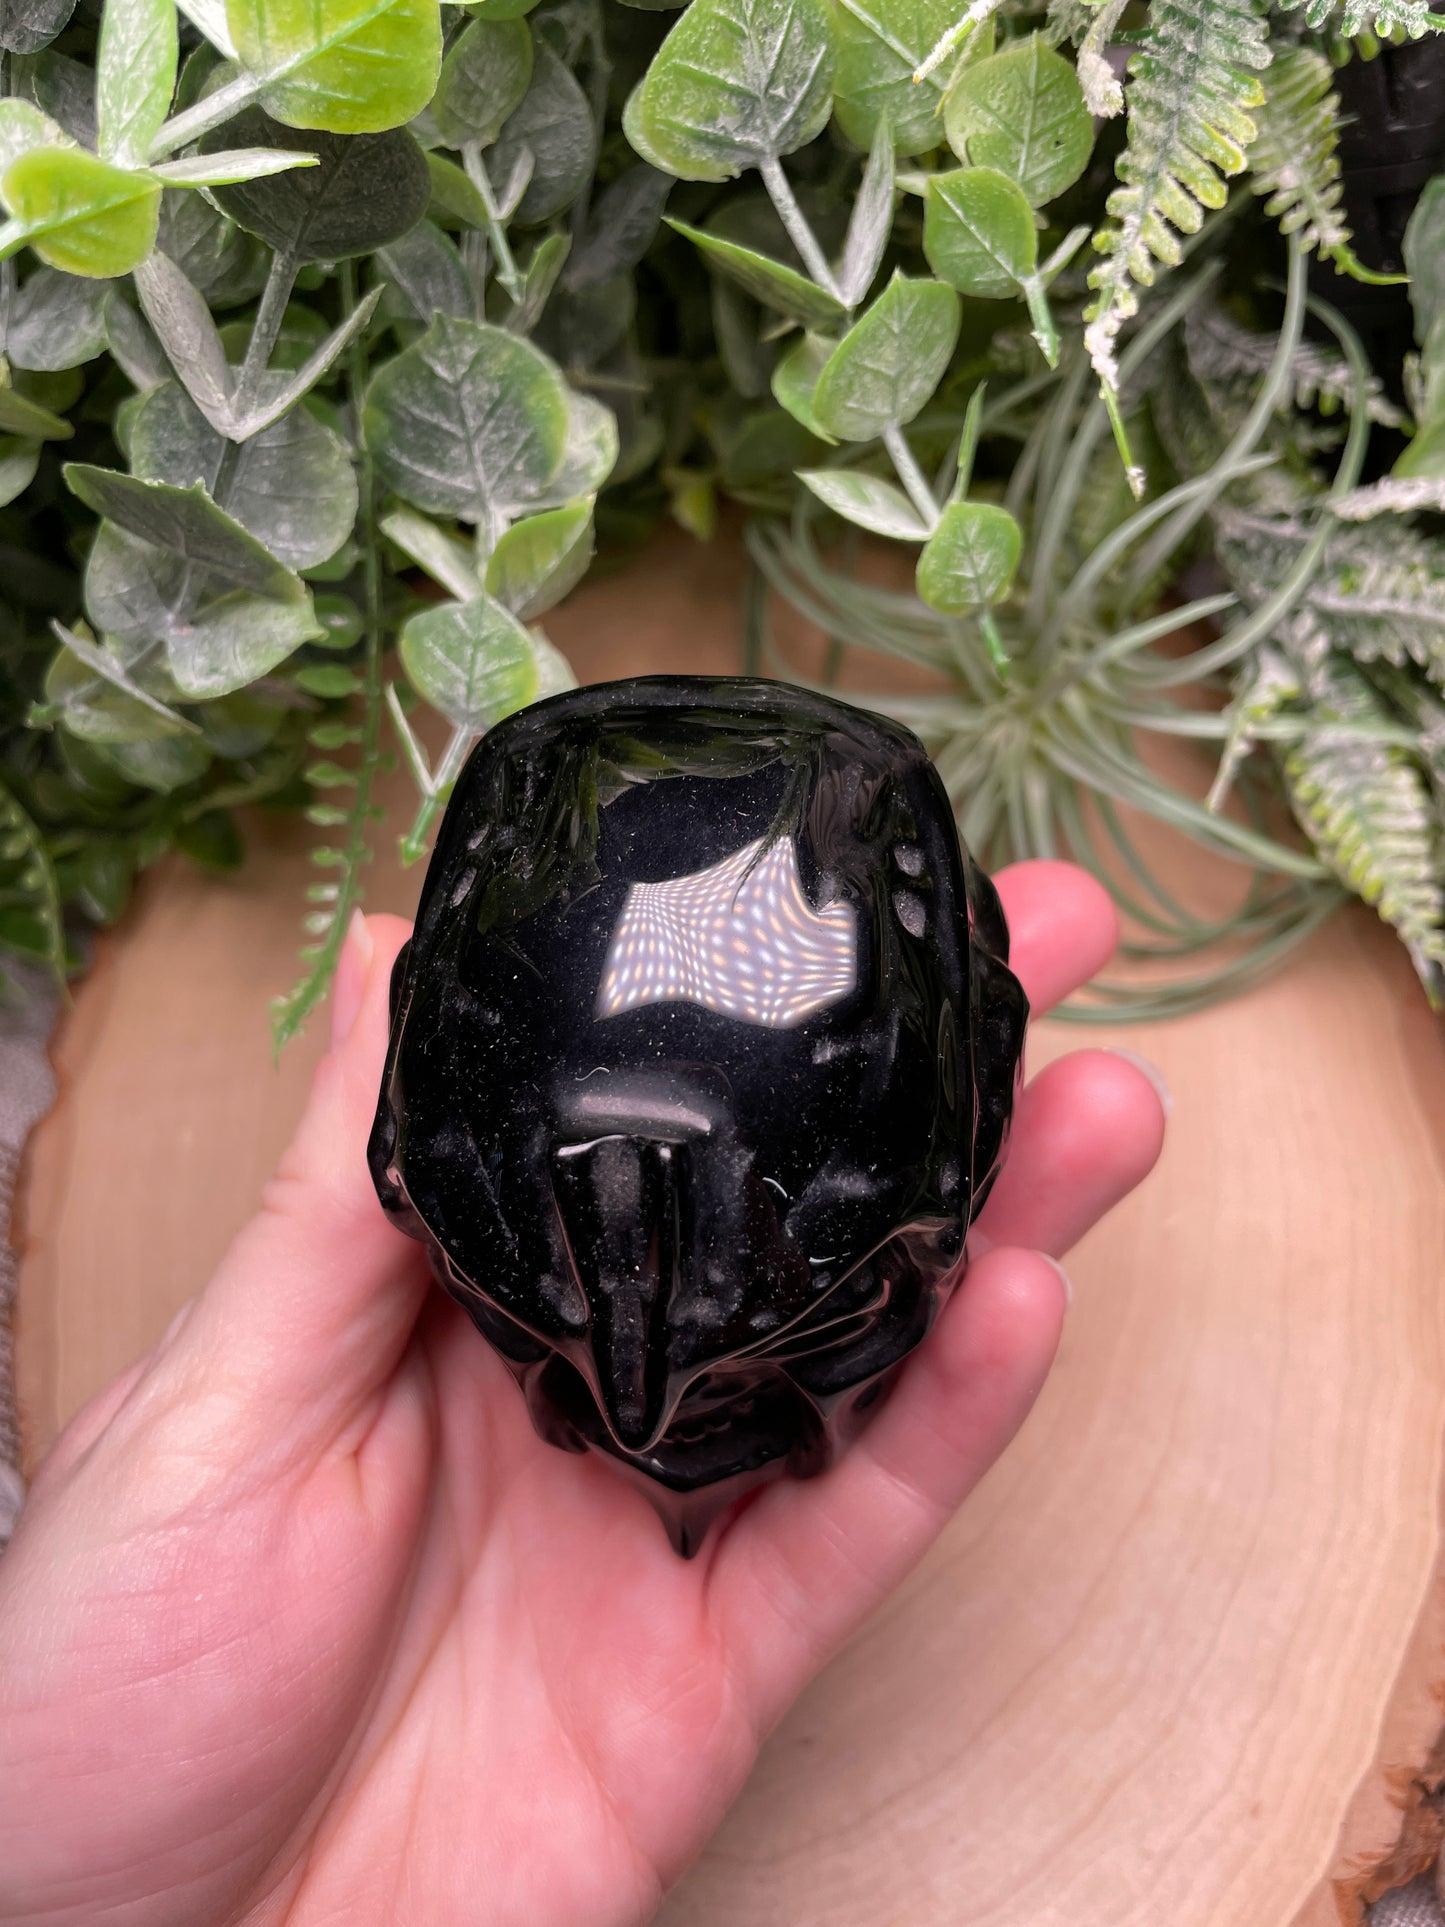 Obsidian Skull with Helmet